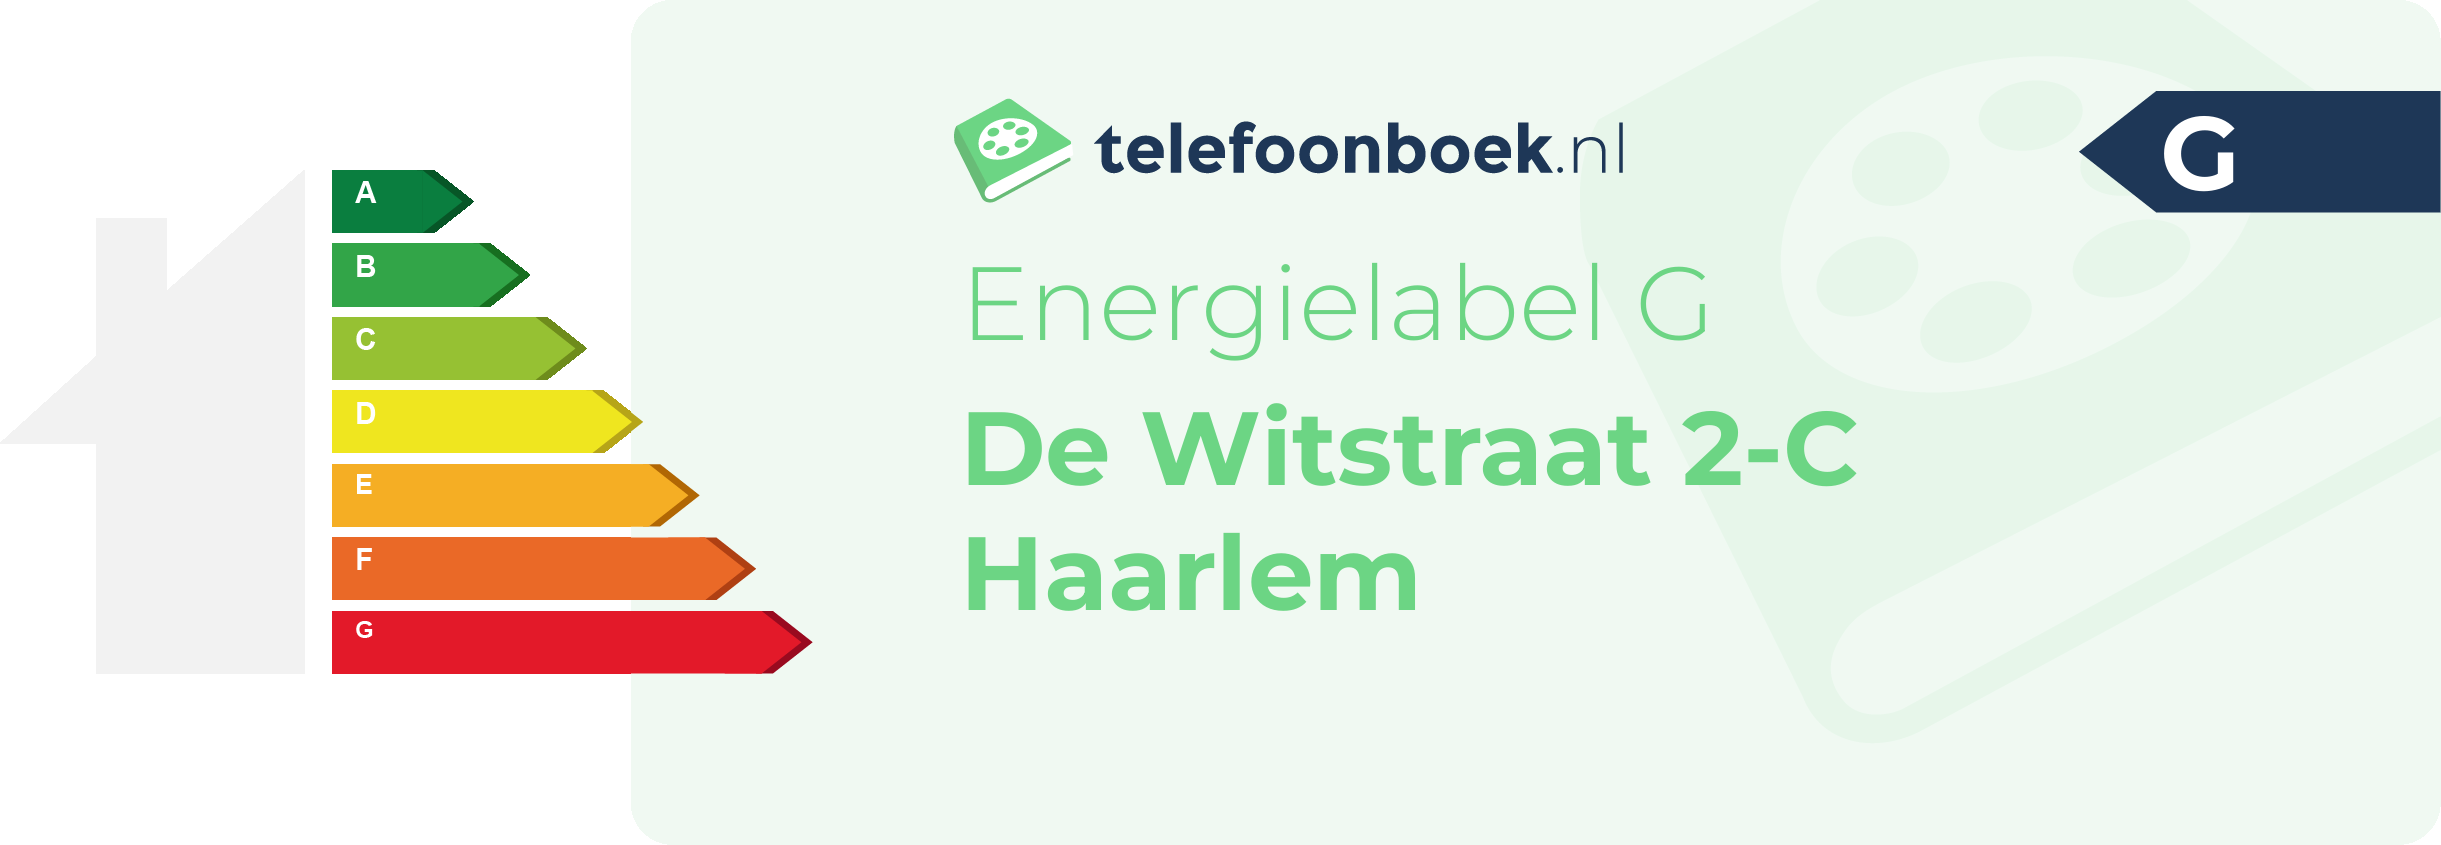 Energielabel De Witstraat 2-C Haarlem